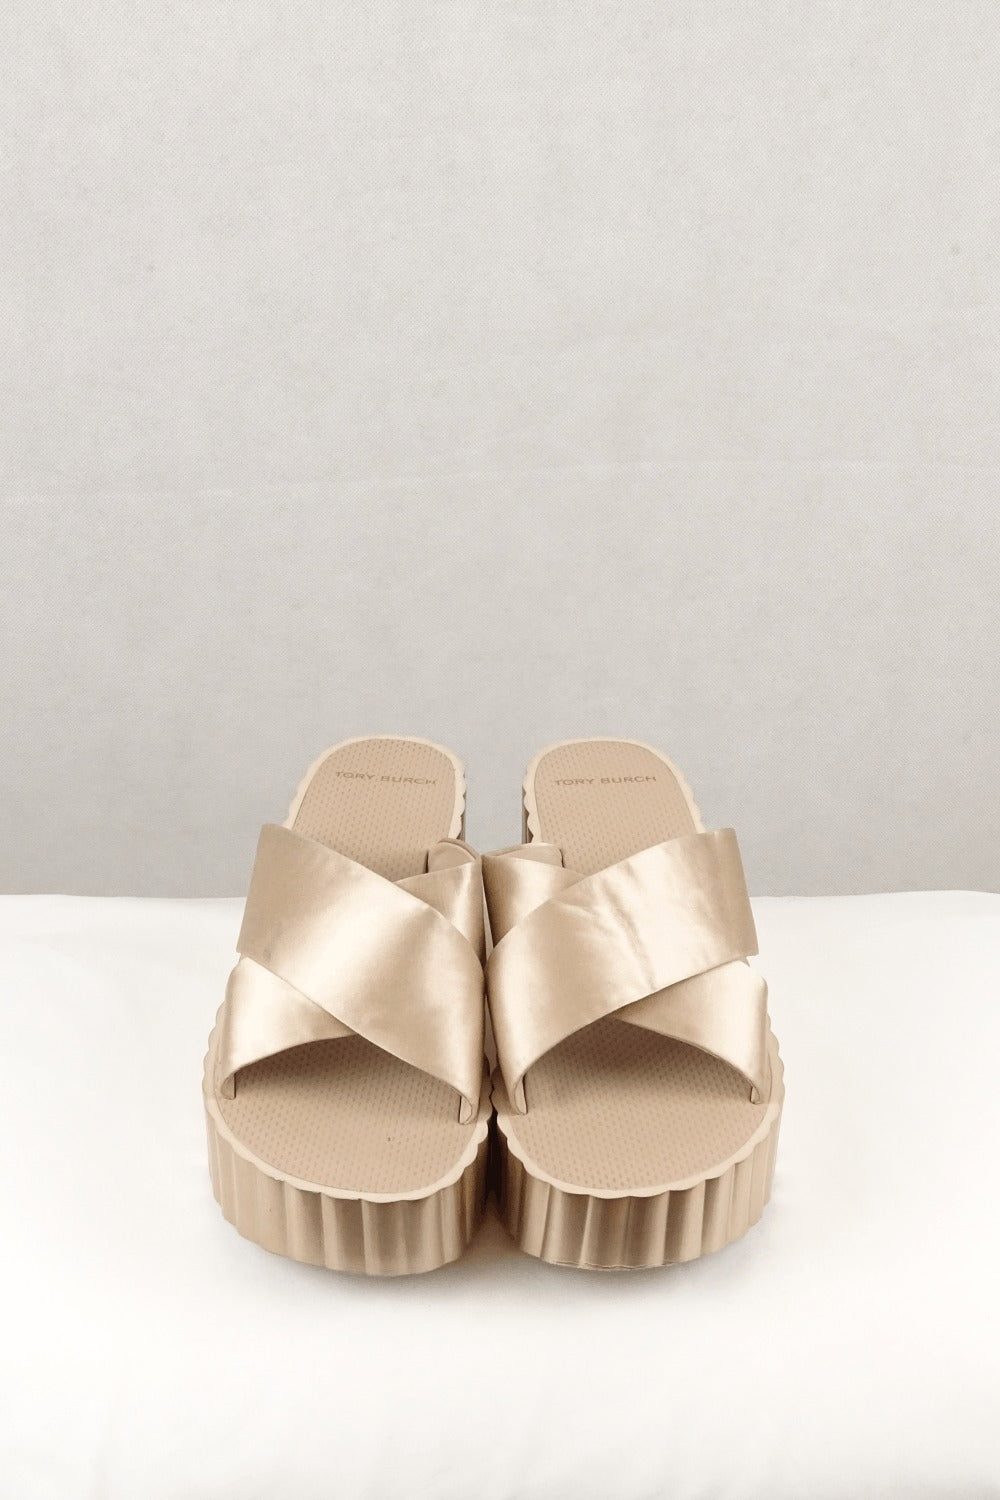 Tory Burch Gold Platform Sandals 11